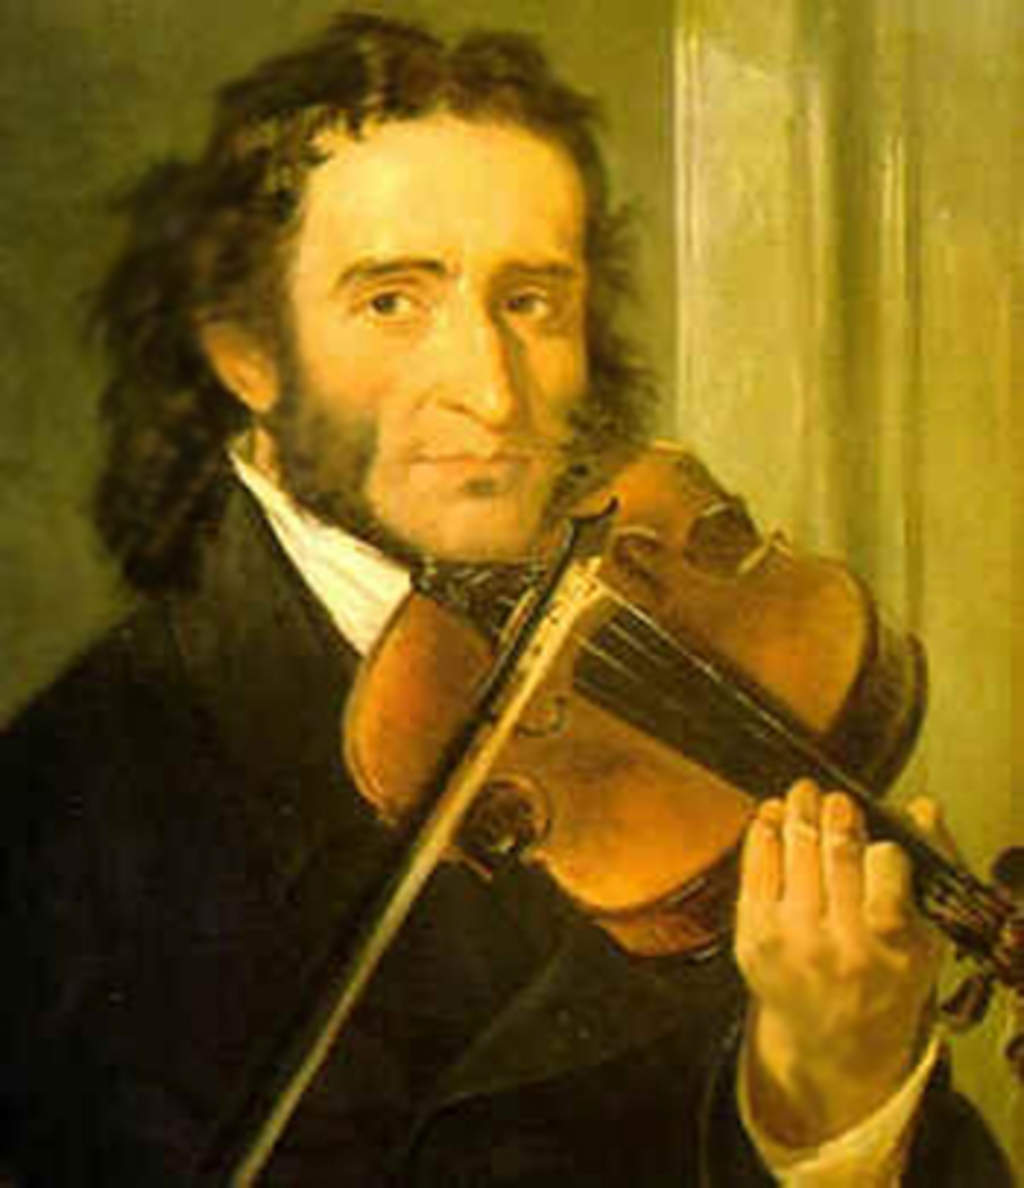 El también violista, que destacó por tener un amplio y sorprendente dominio de su instrumento, además fue conocido por tener una vida desordenada y aventurera. (INTERNET)